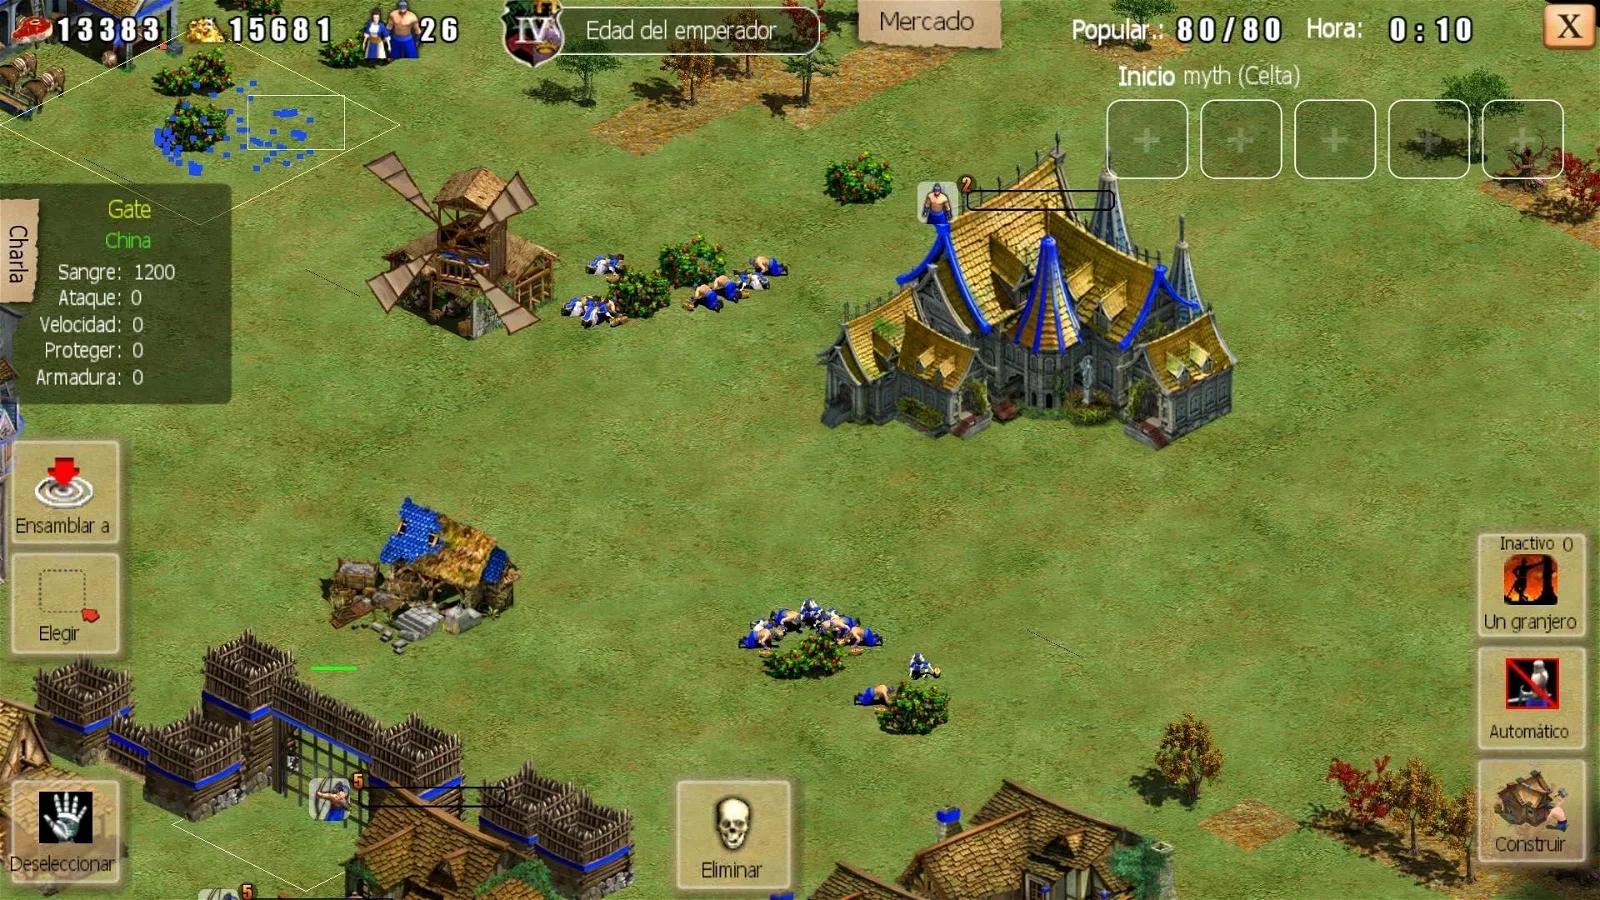 juegos de estrategia tipo age of empires - Cuál es el juego más parecido a Age of Empires